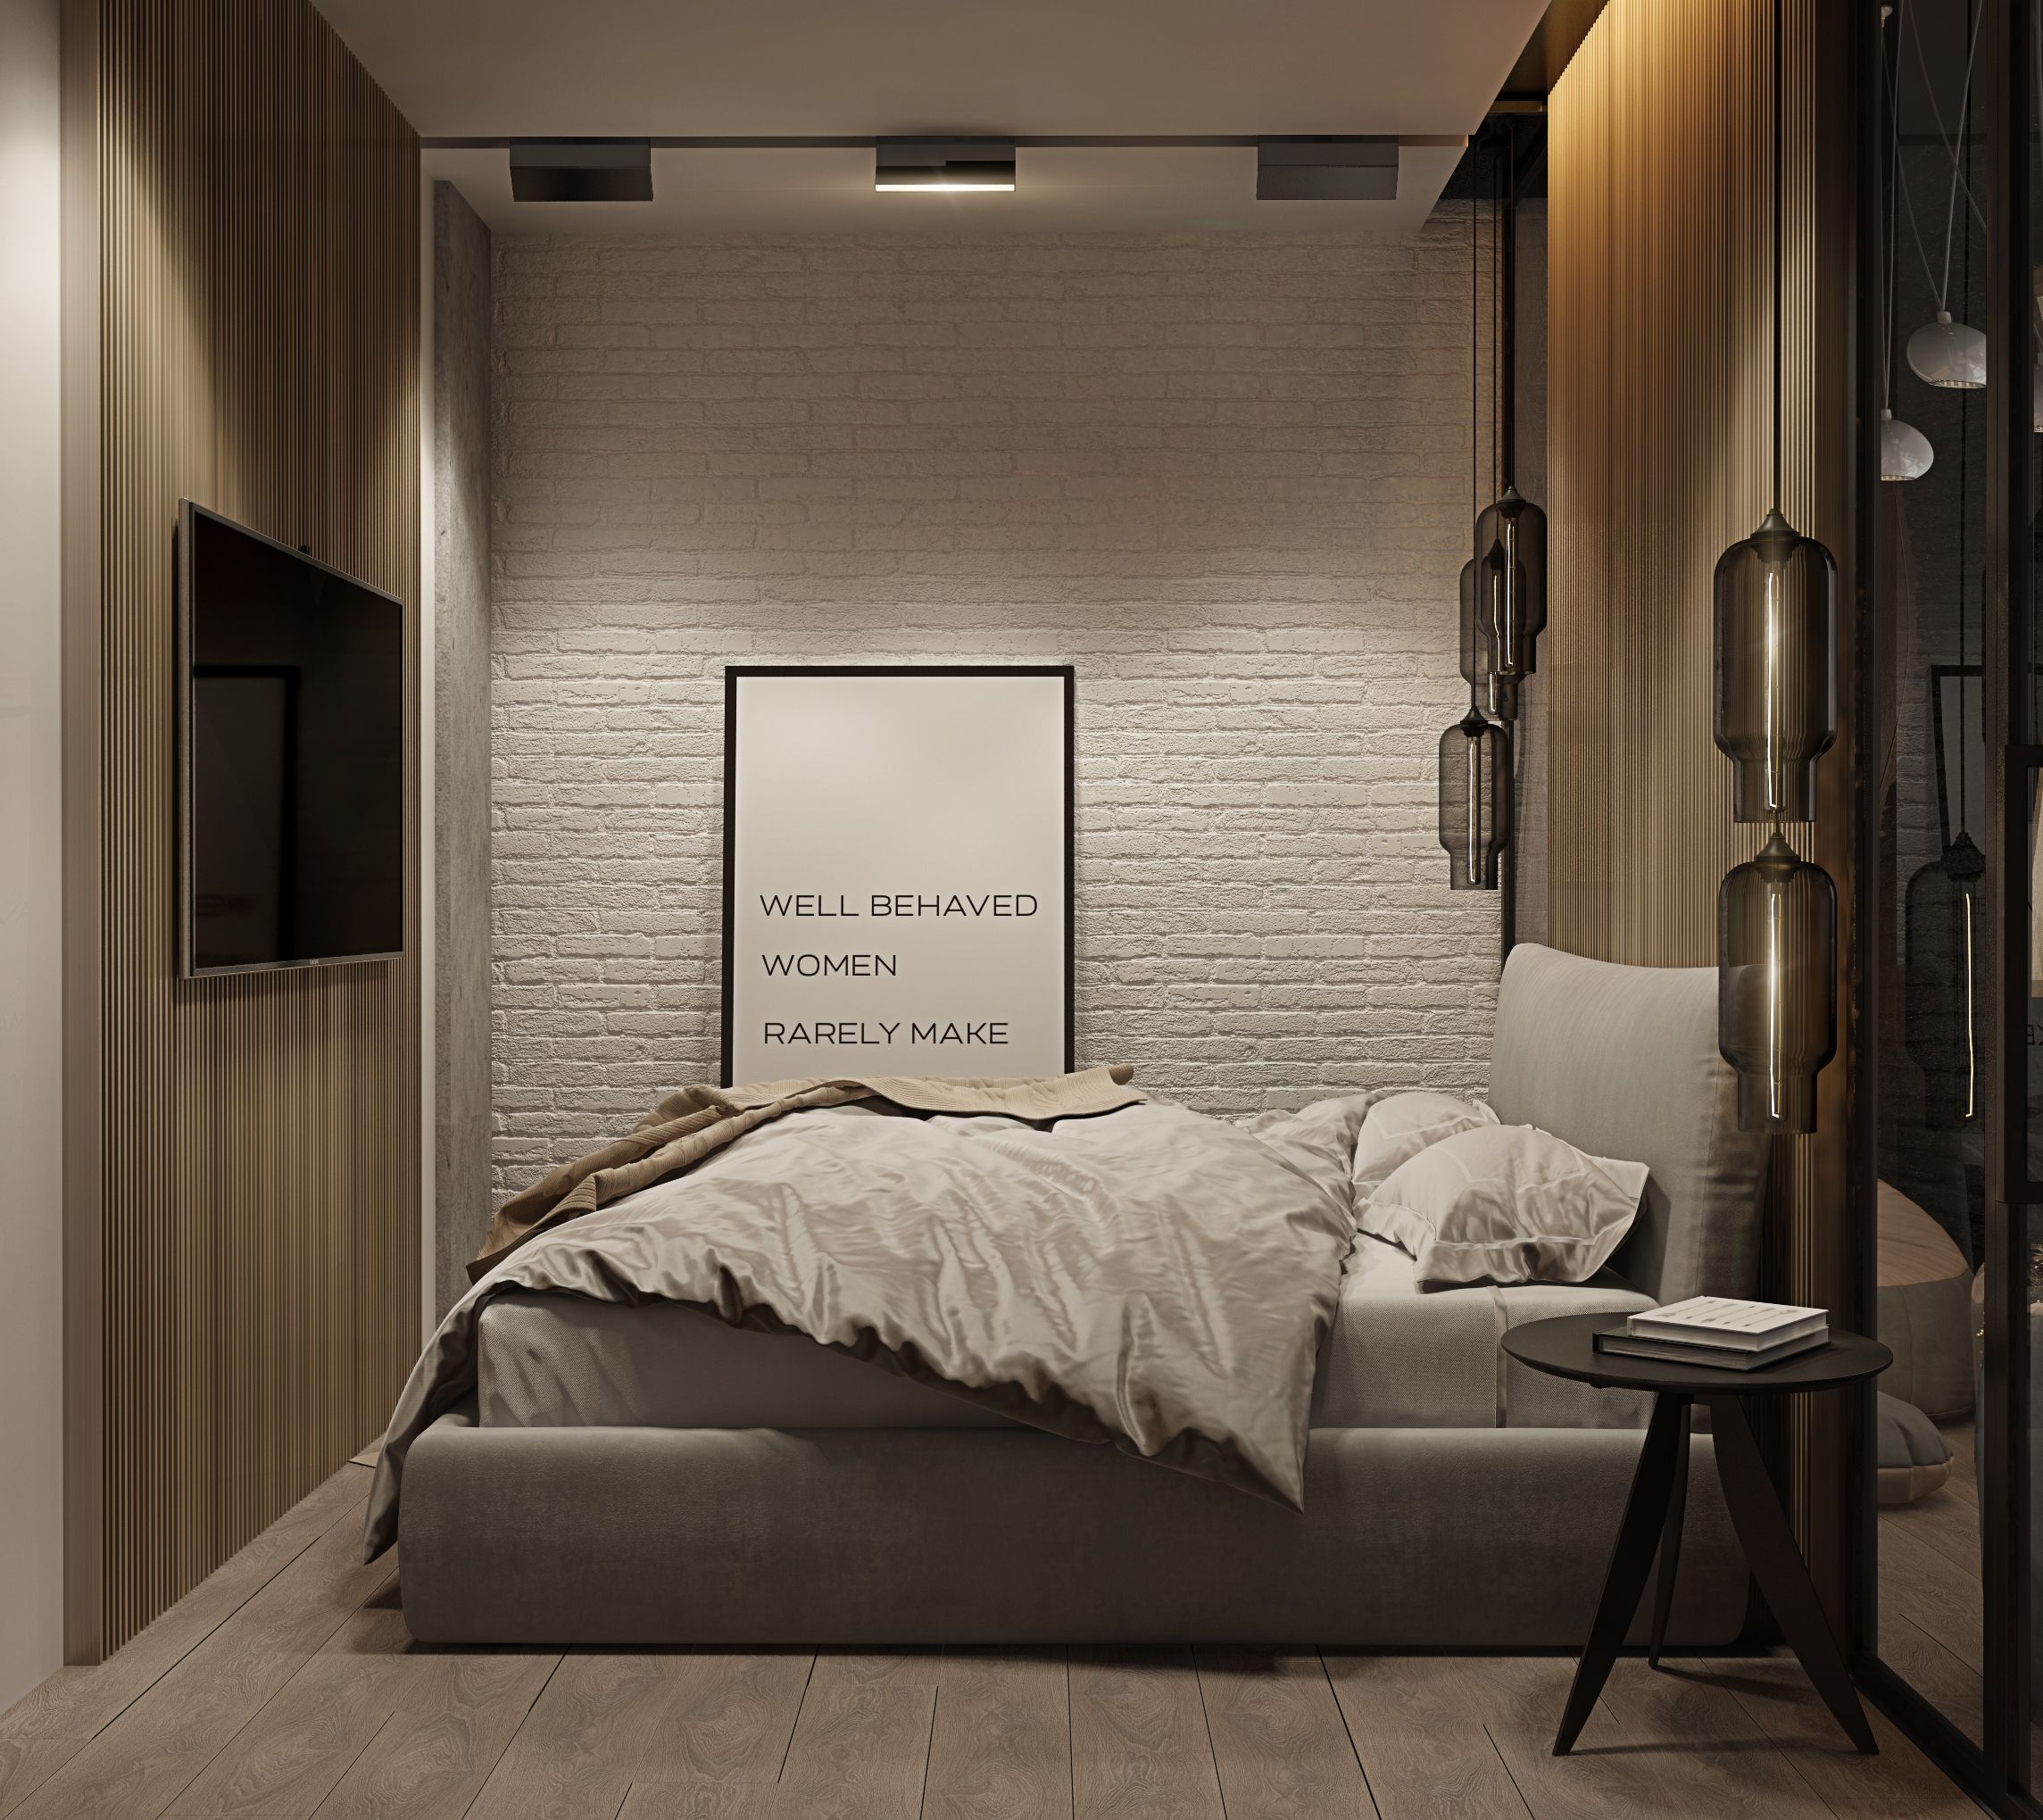 Pro Idee Garten Inspirierend Modern Interior Design Badroom Loft Twentyseven Contemporary